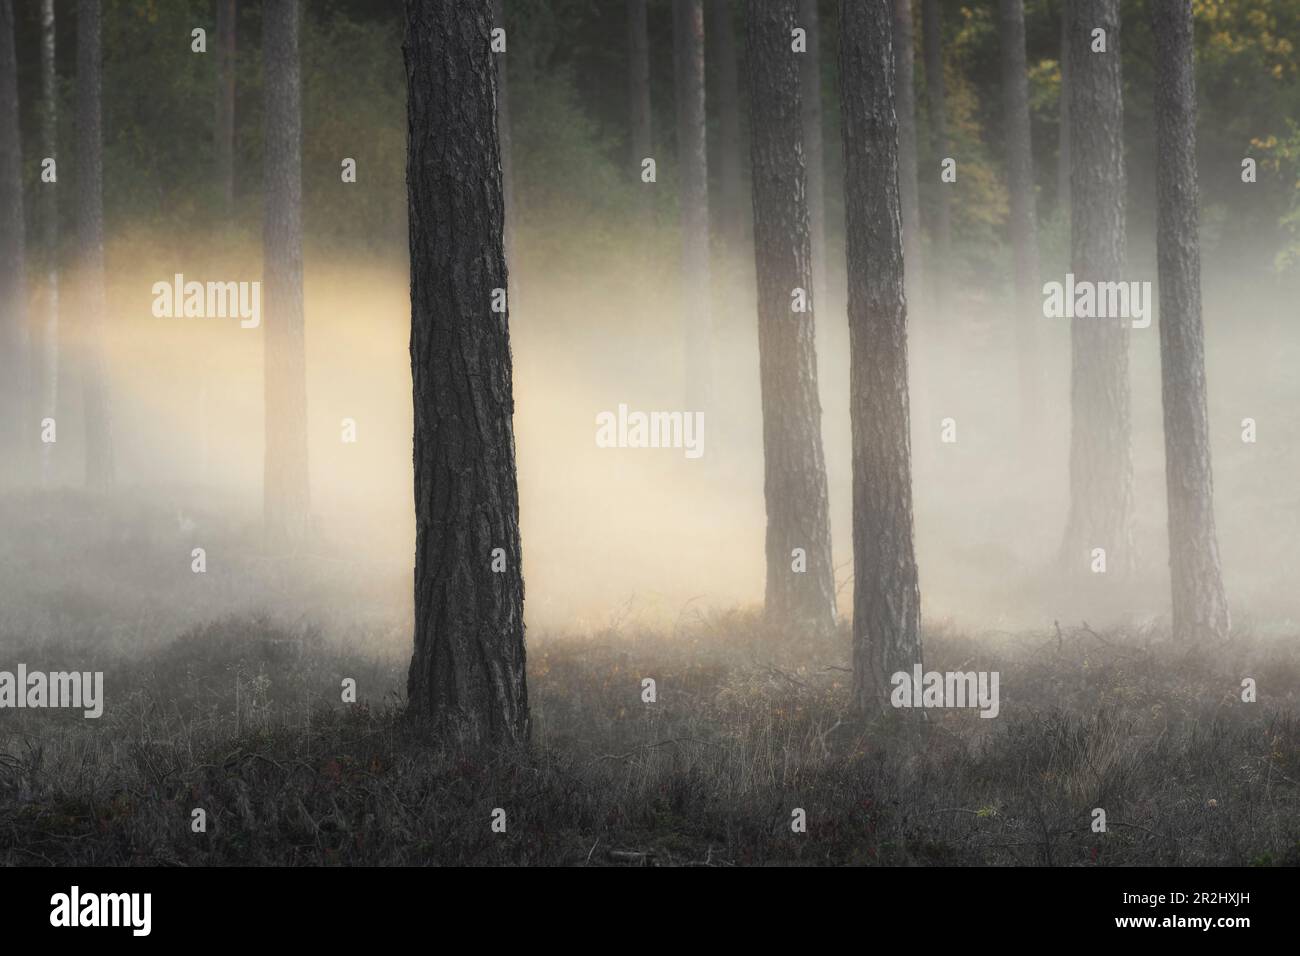 Bäume im offenen Wald stehen im Nebel. Warme Sonnenstrahlen. Kein Himmel Byxelkrok, Oland, Schweden. Stockfoto